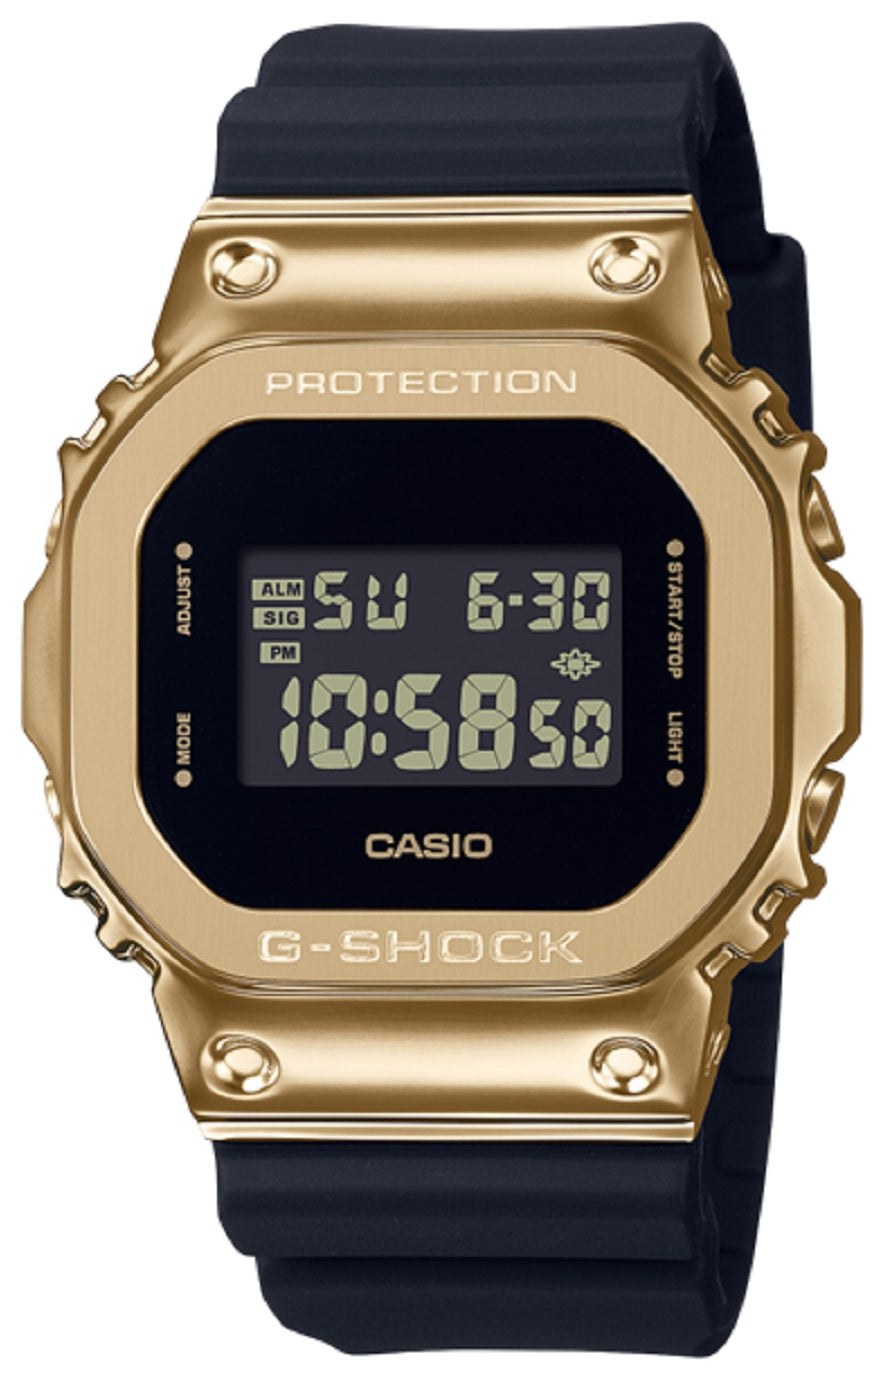 Casio G-shock GM-5600G-9DR Digital Rubber Strap Watch-Watch Portal Philippines